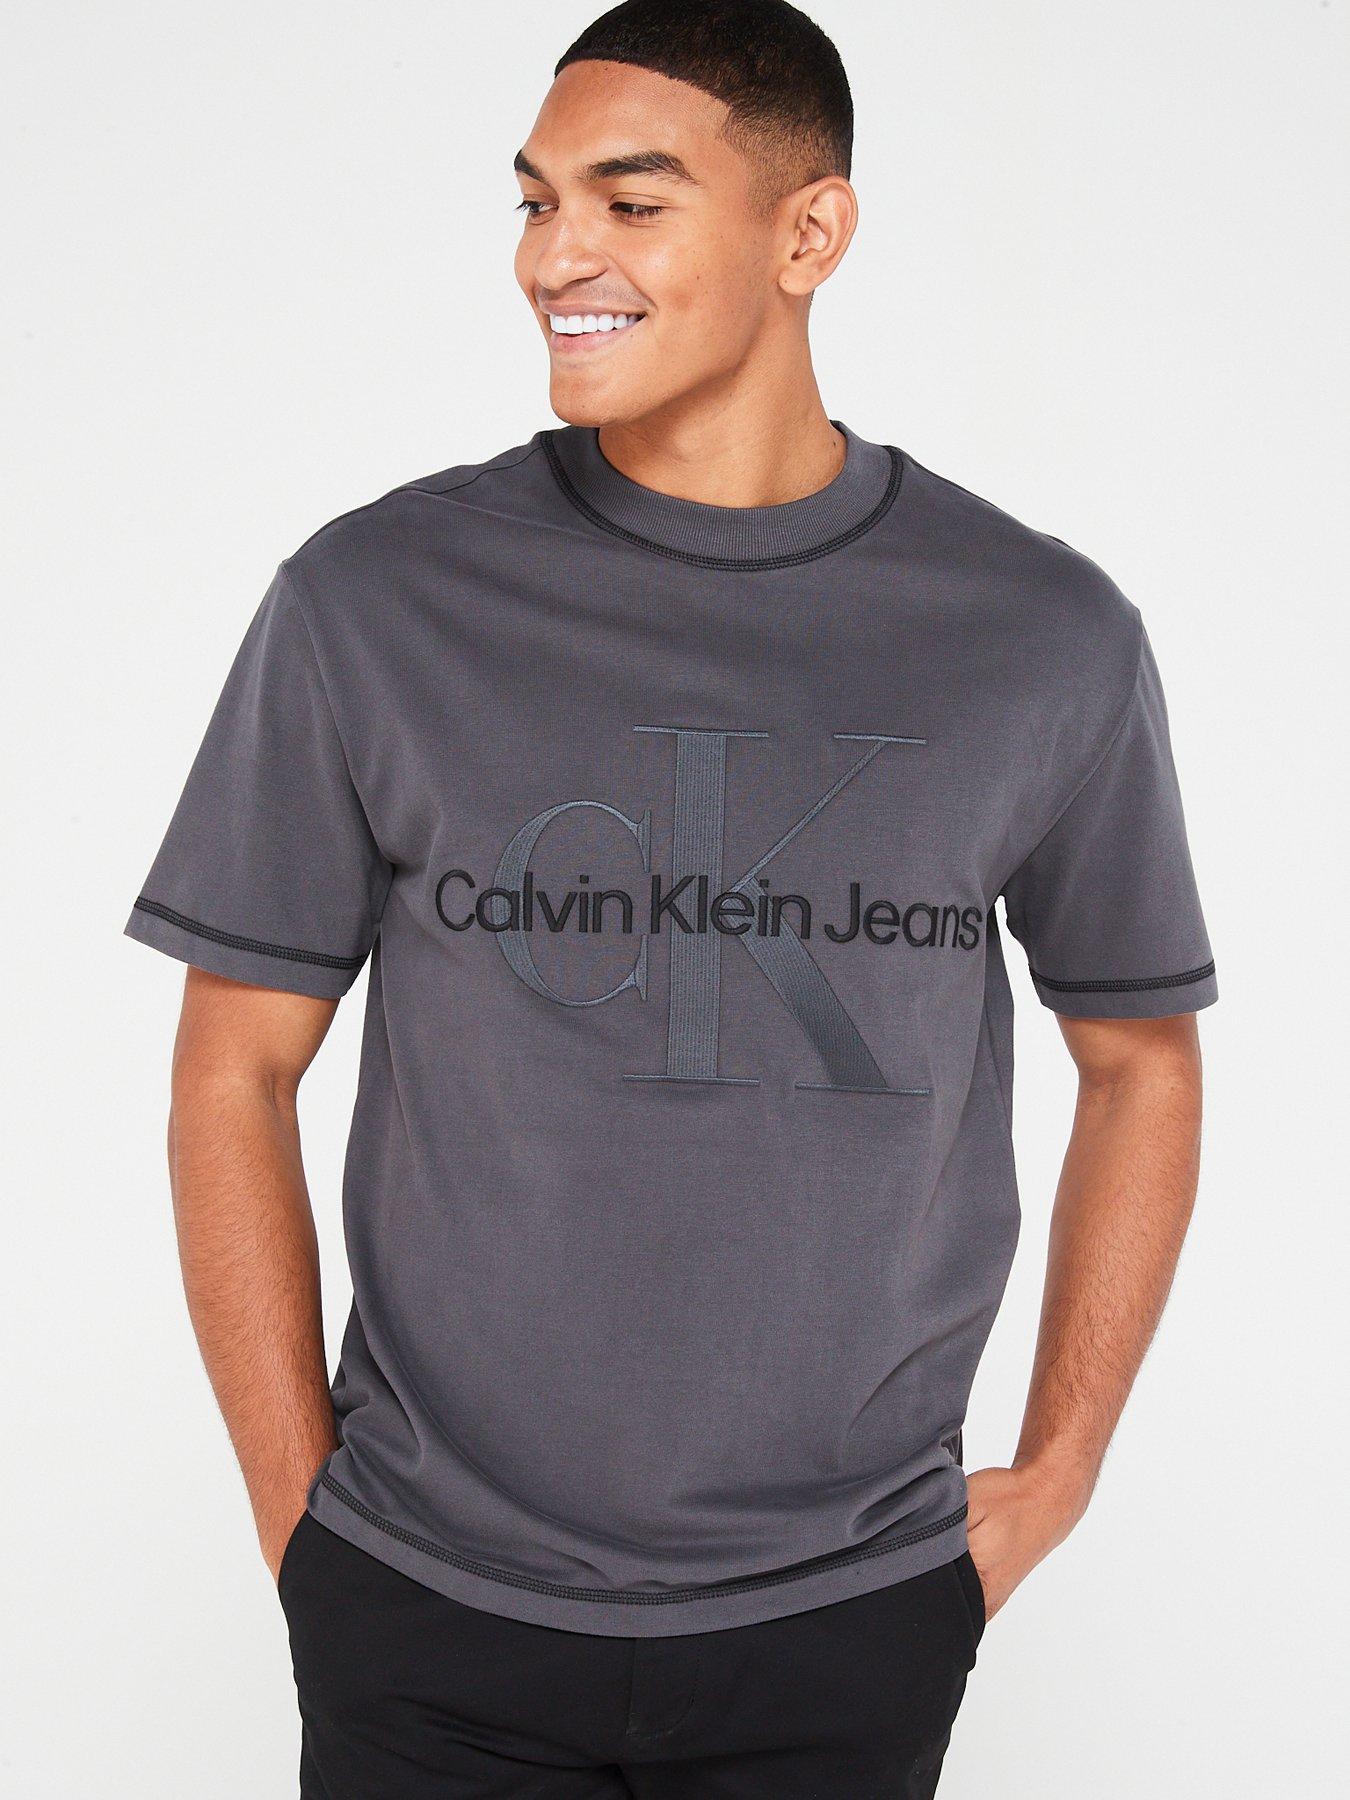 Calvin klein | T-shirts & polos | Men | Very Ireland